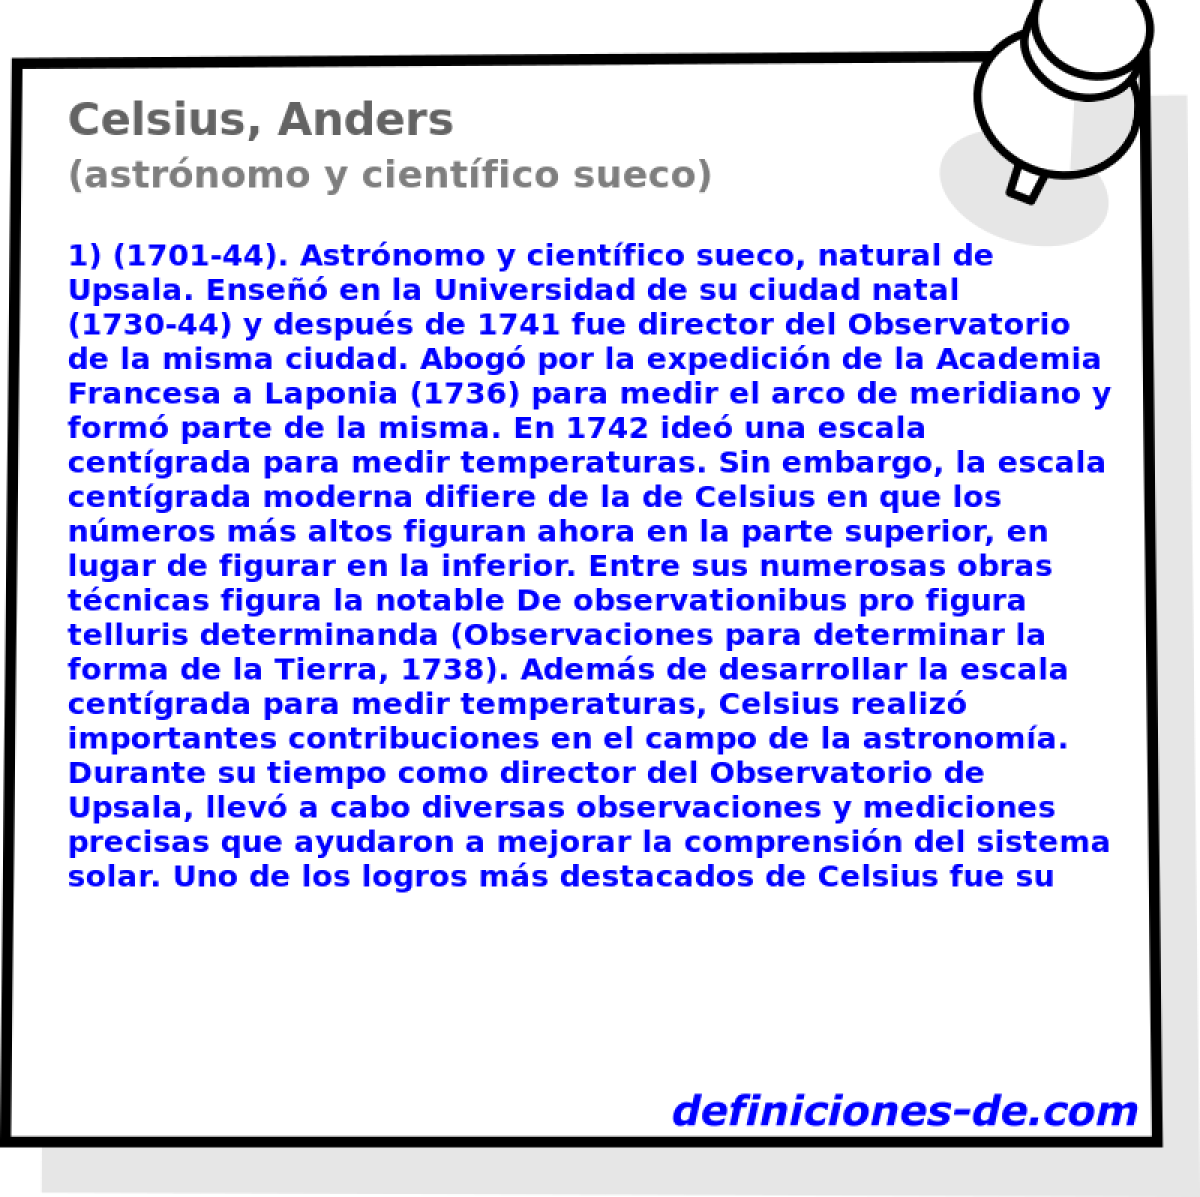 Celsius, Anders (astrnomo y cientfico sueco)